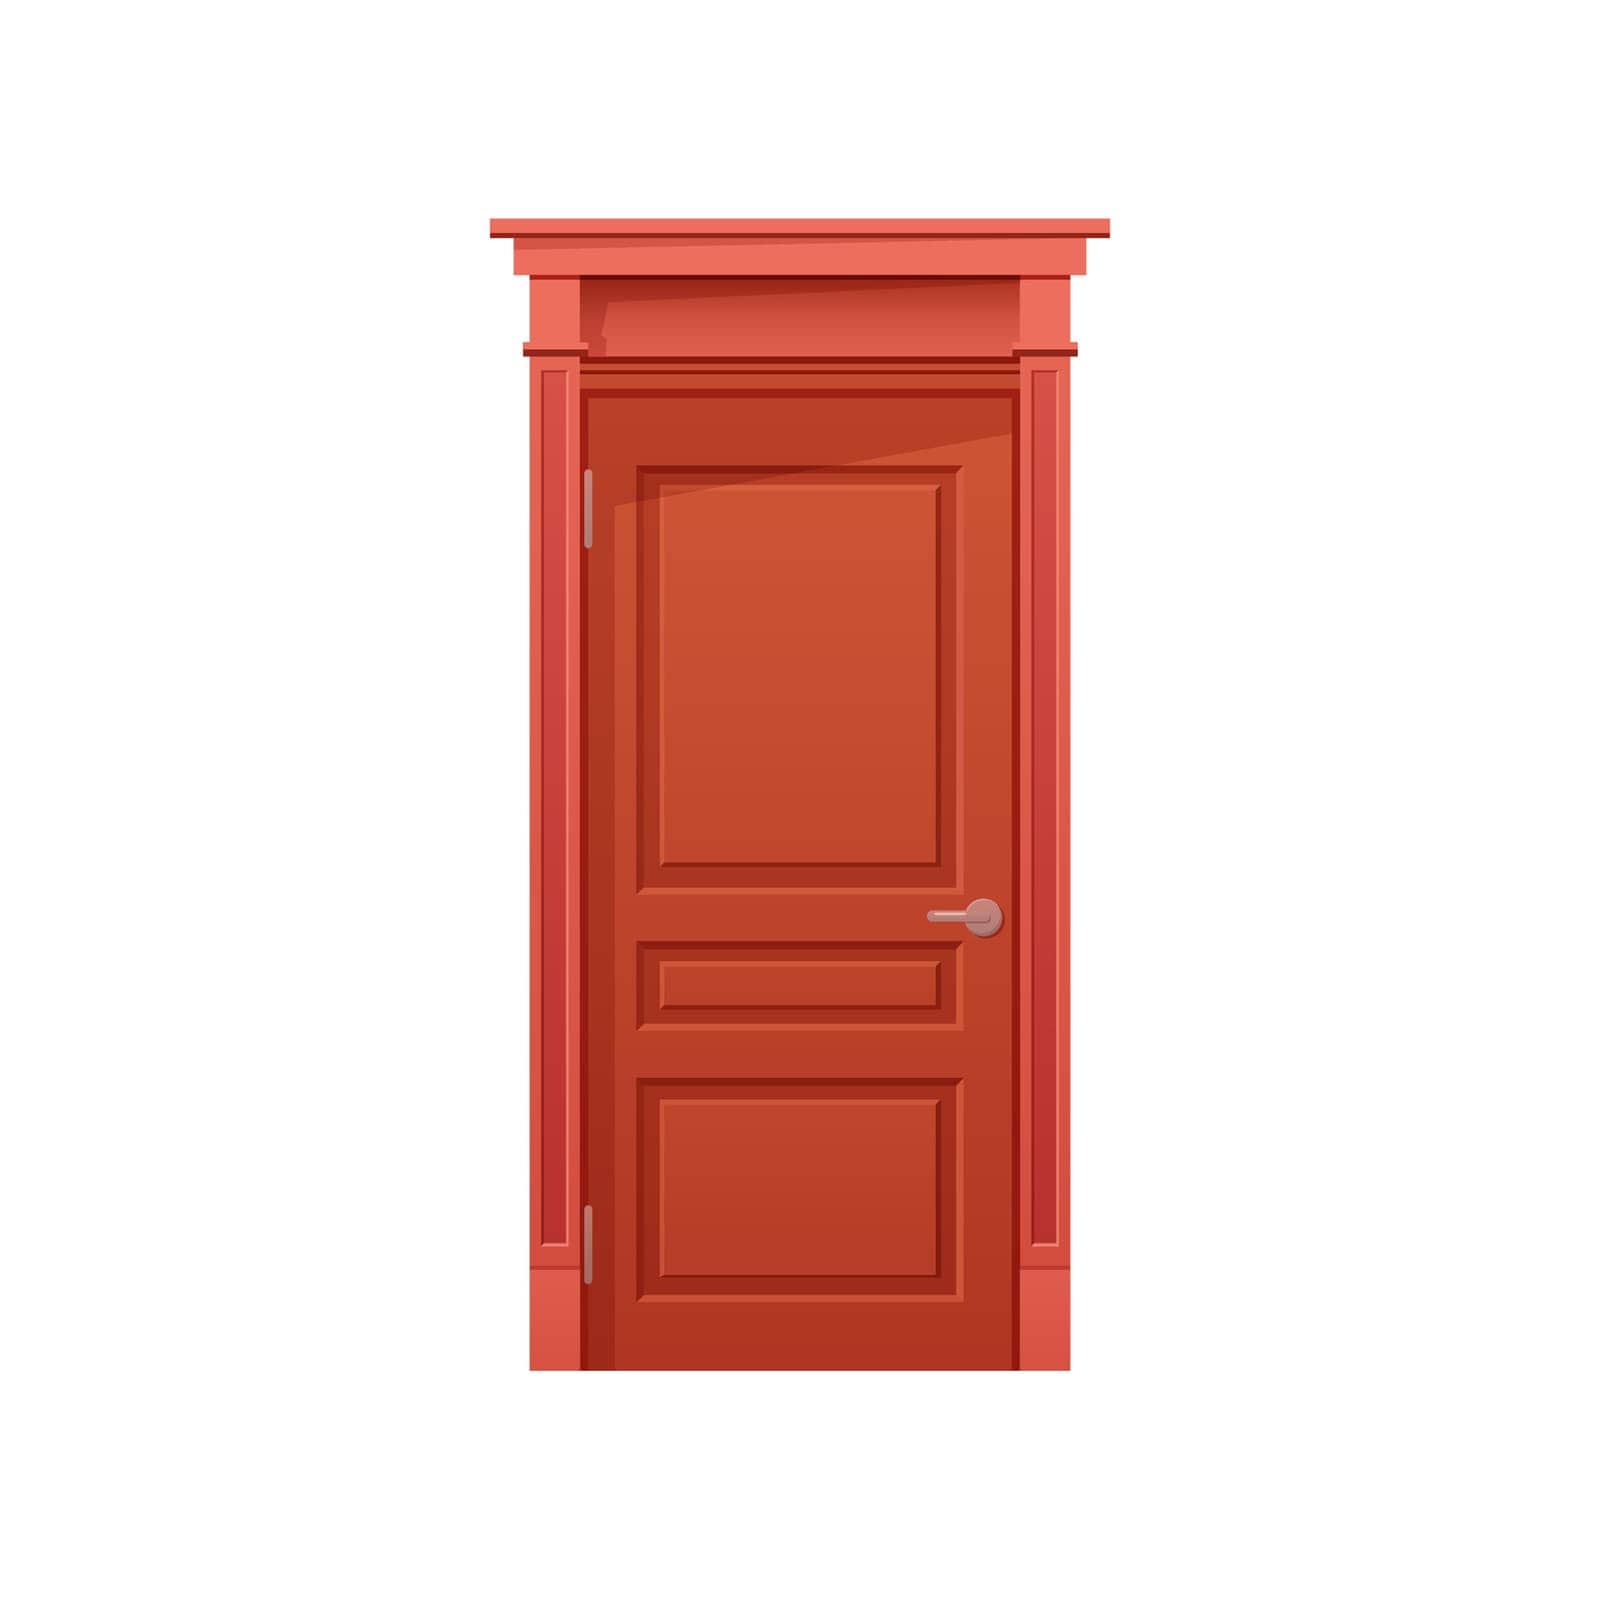 Animated closed door. Home entrance door, wooden front door cartoon vector illustration